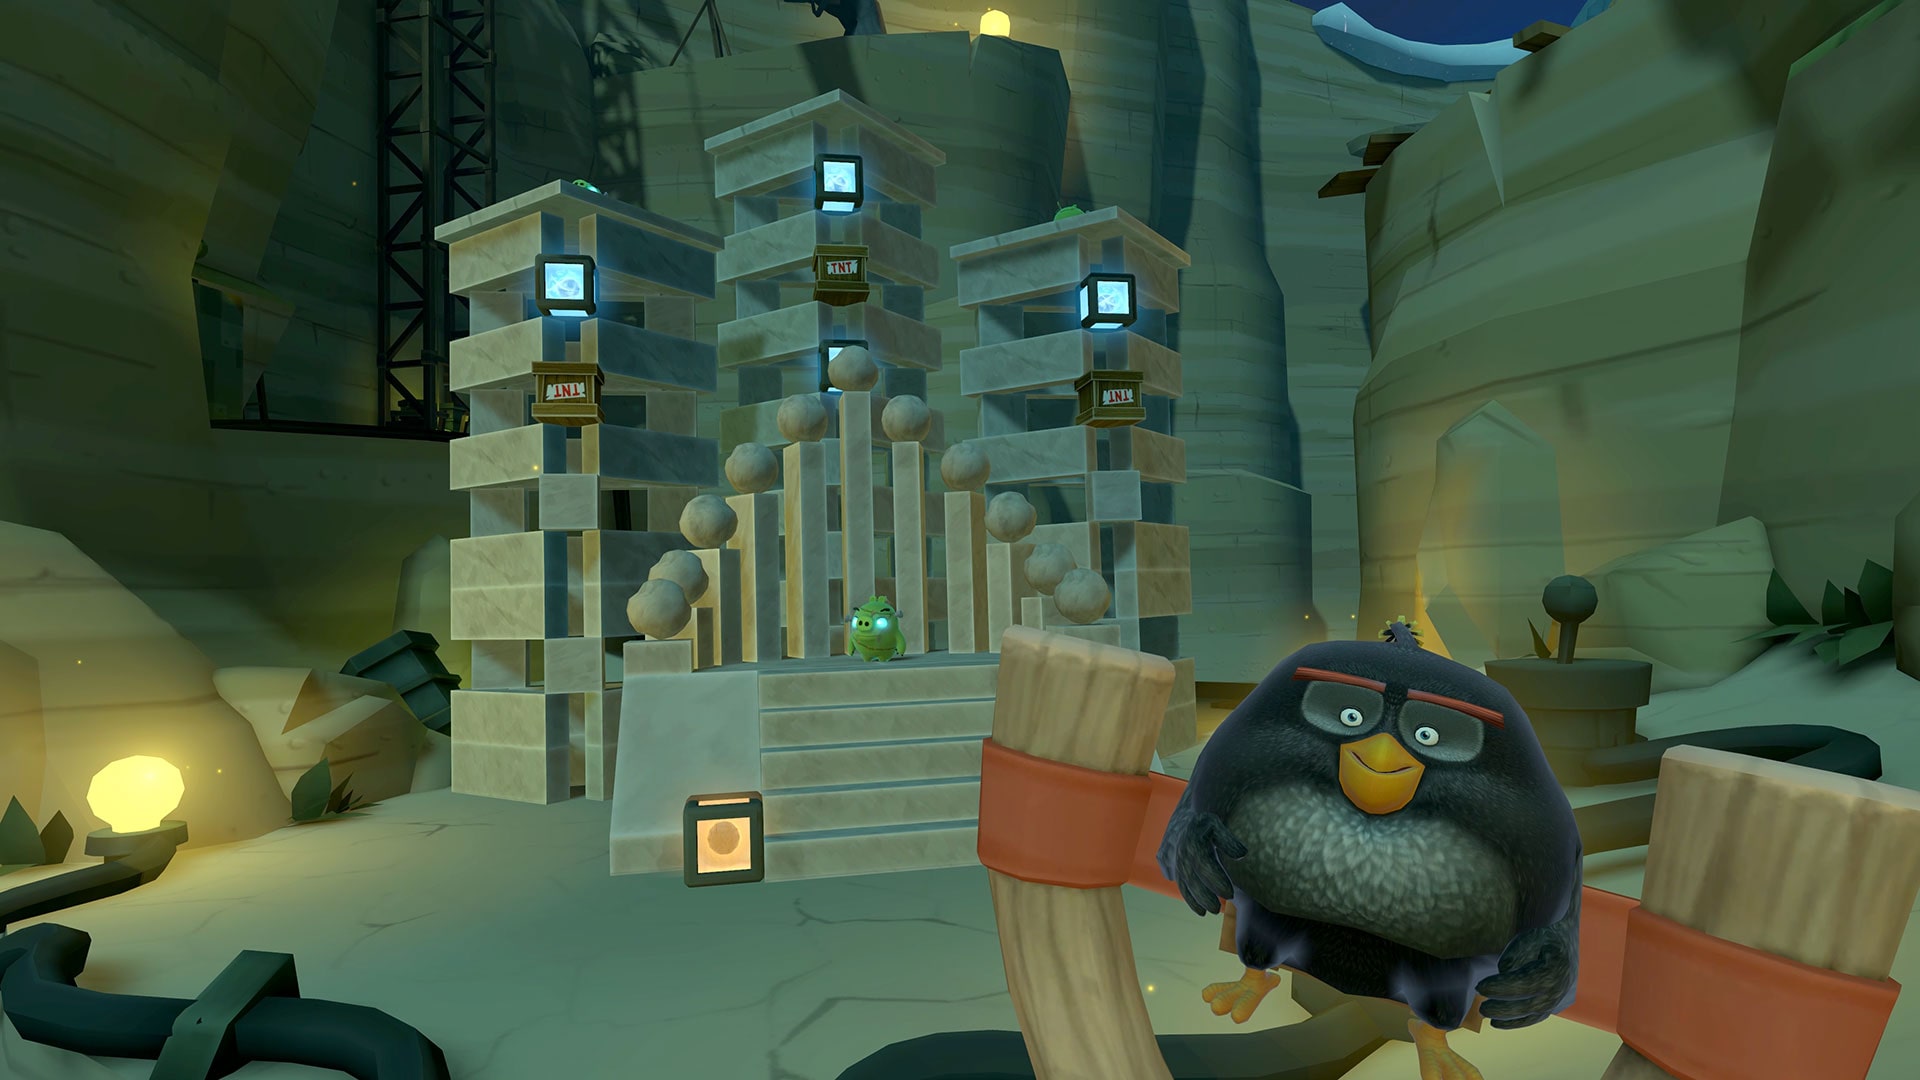 Overfrakke ineffektiv gå på pension Angry Birds VR: Isle of Pigs